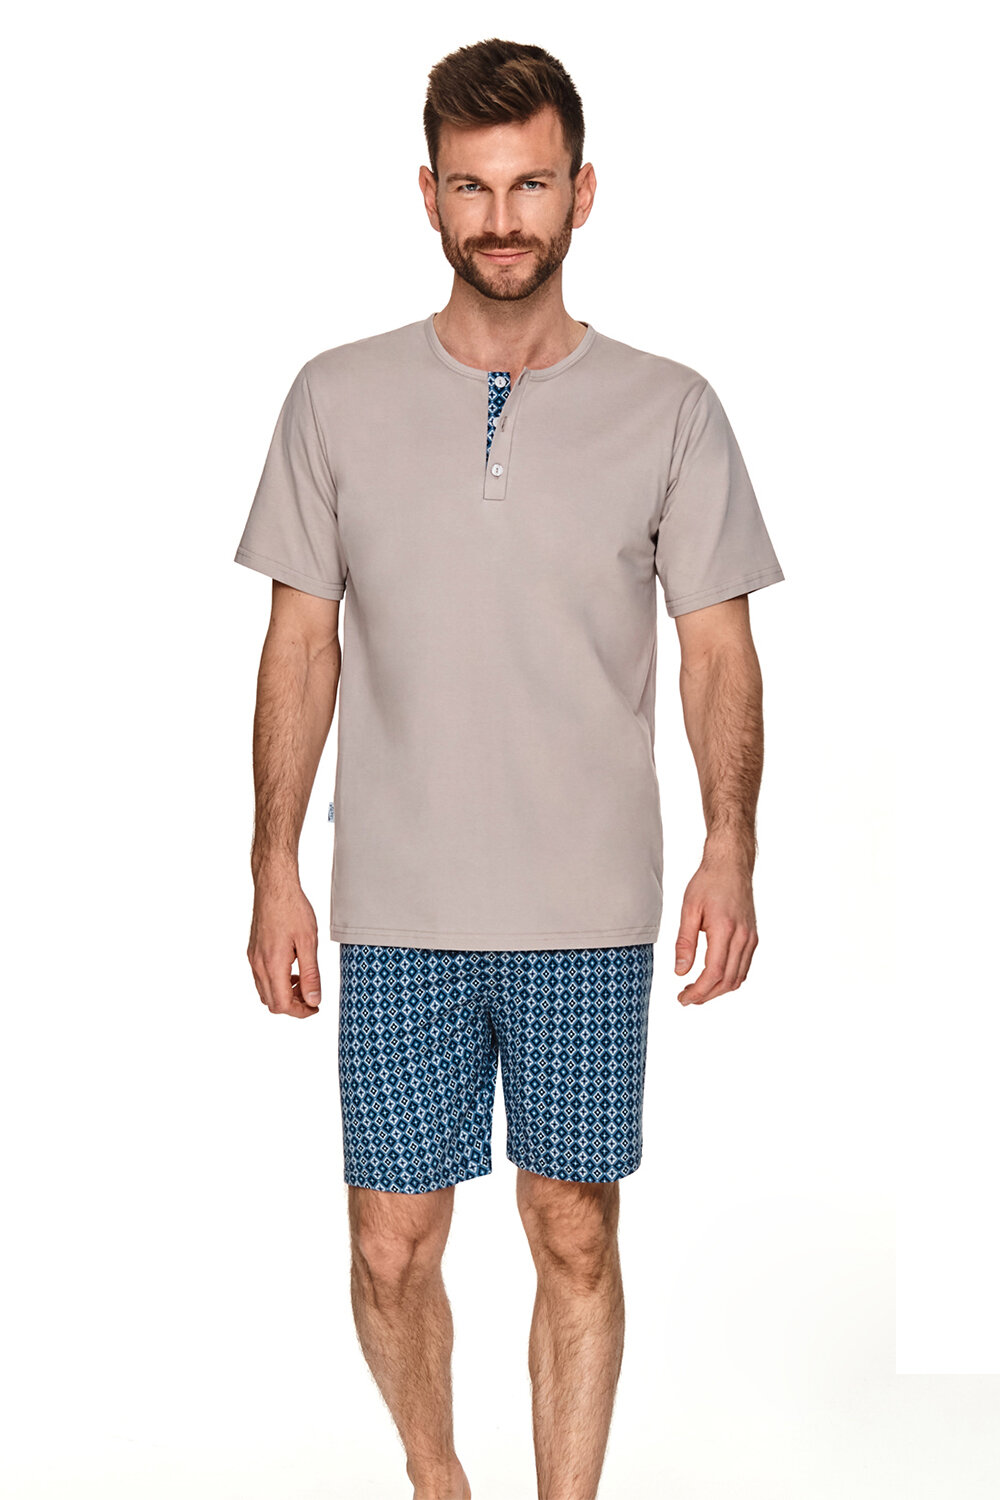 Пижама мужская TARO Maksim 2736-01, футболка и шорты, бежевый, хлопок 100% (Размер: L)